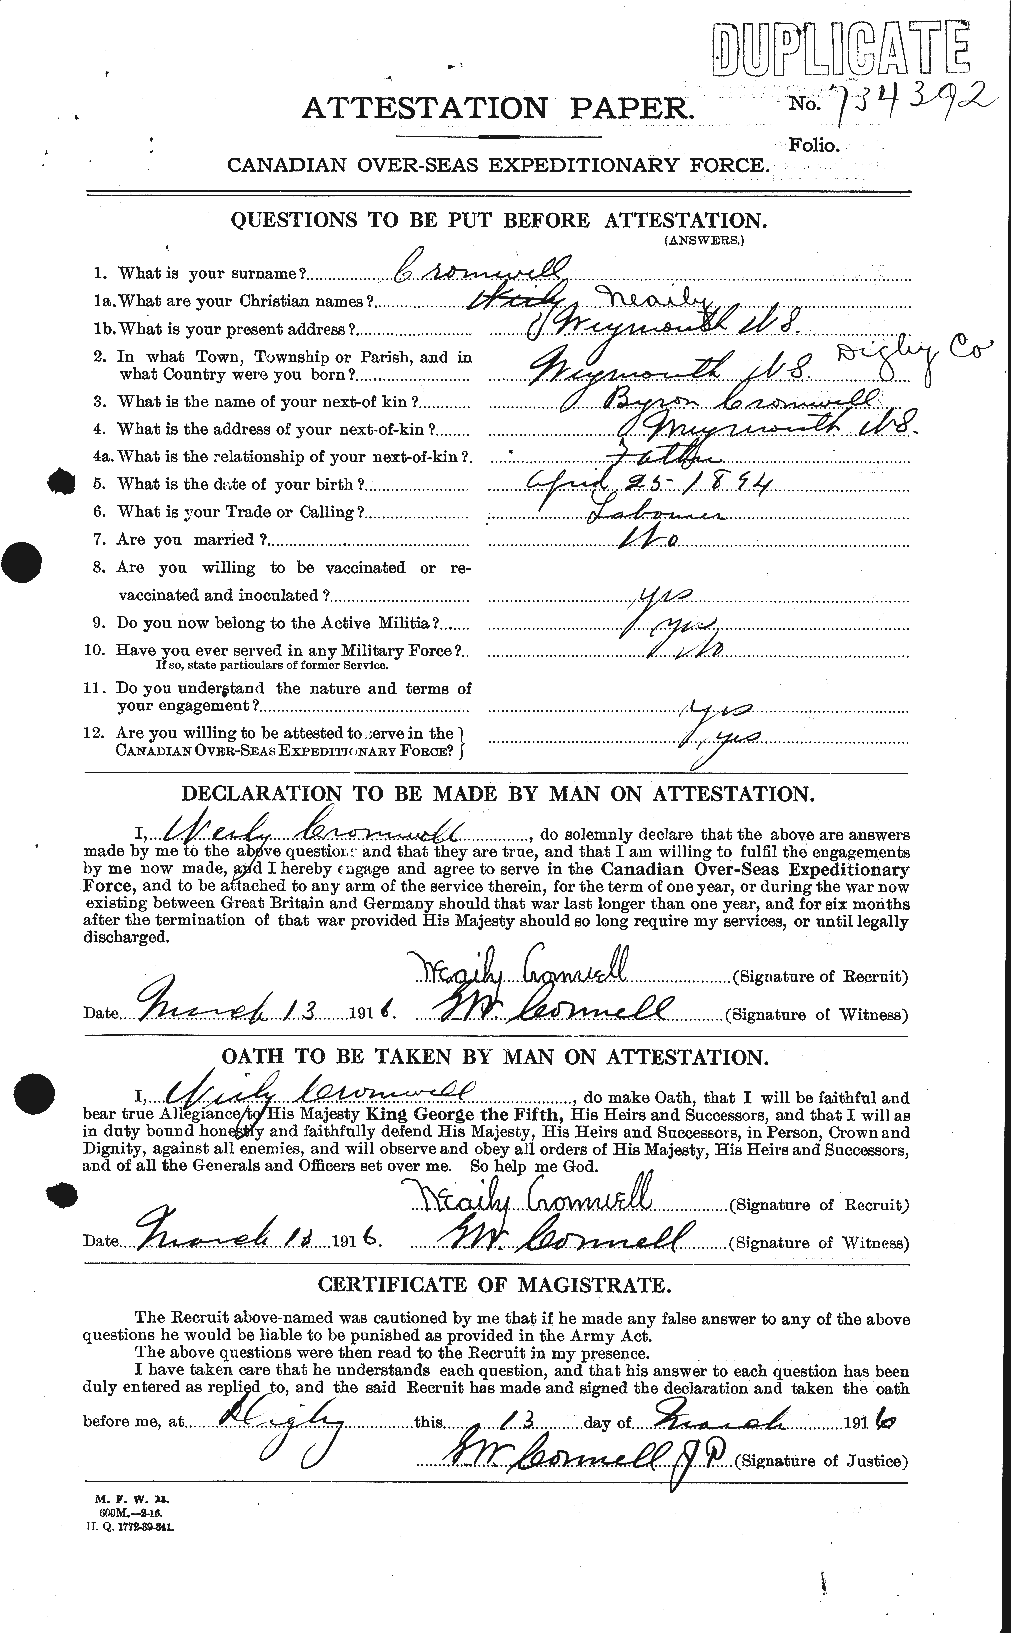 Dossiers du Personnel de la Première Guerre mondiale - CEC 064914a